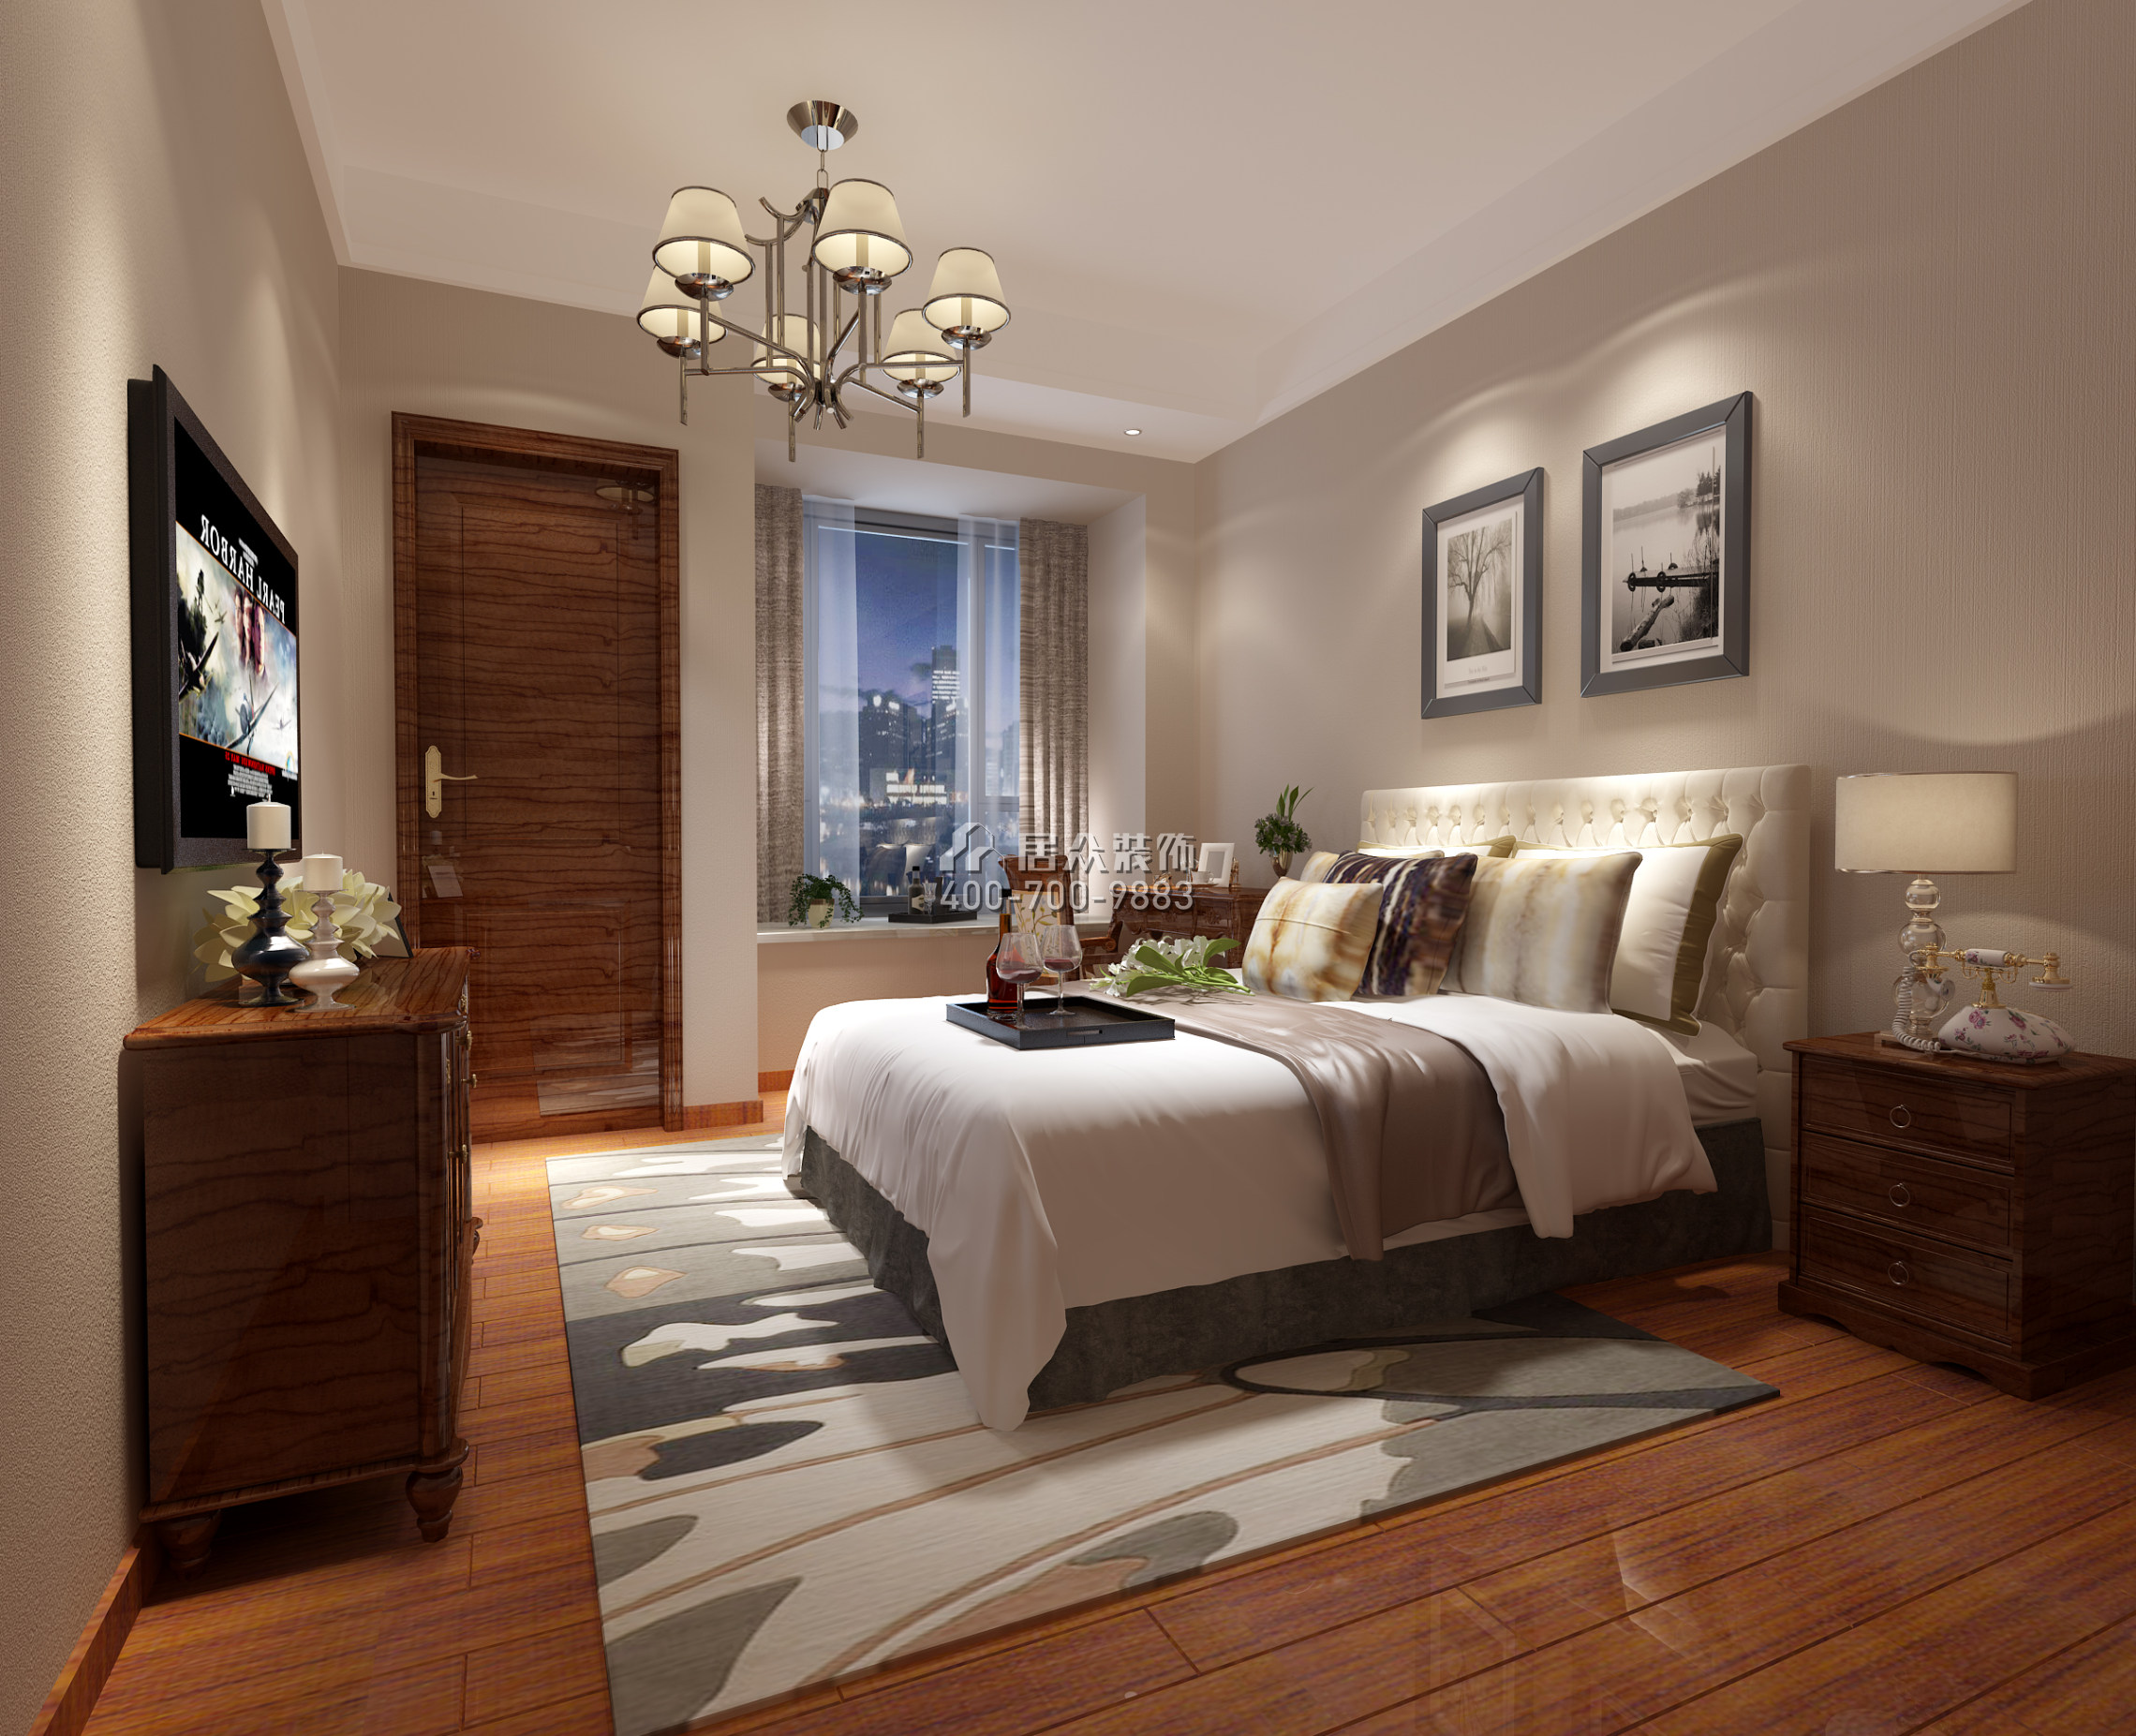 雅居乐剑桥郡245平方米中式风格平层户型卧室装修效果图